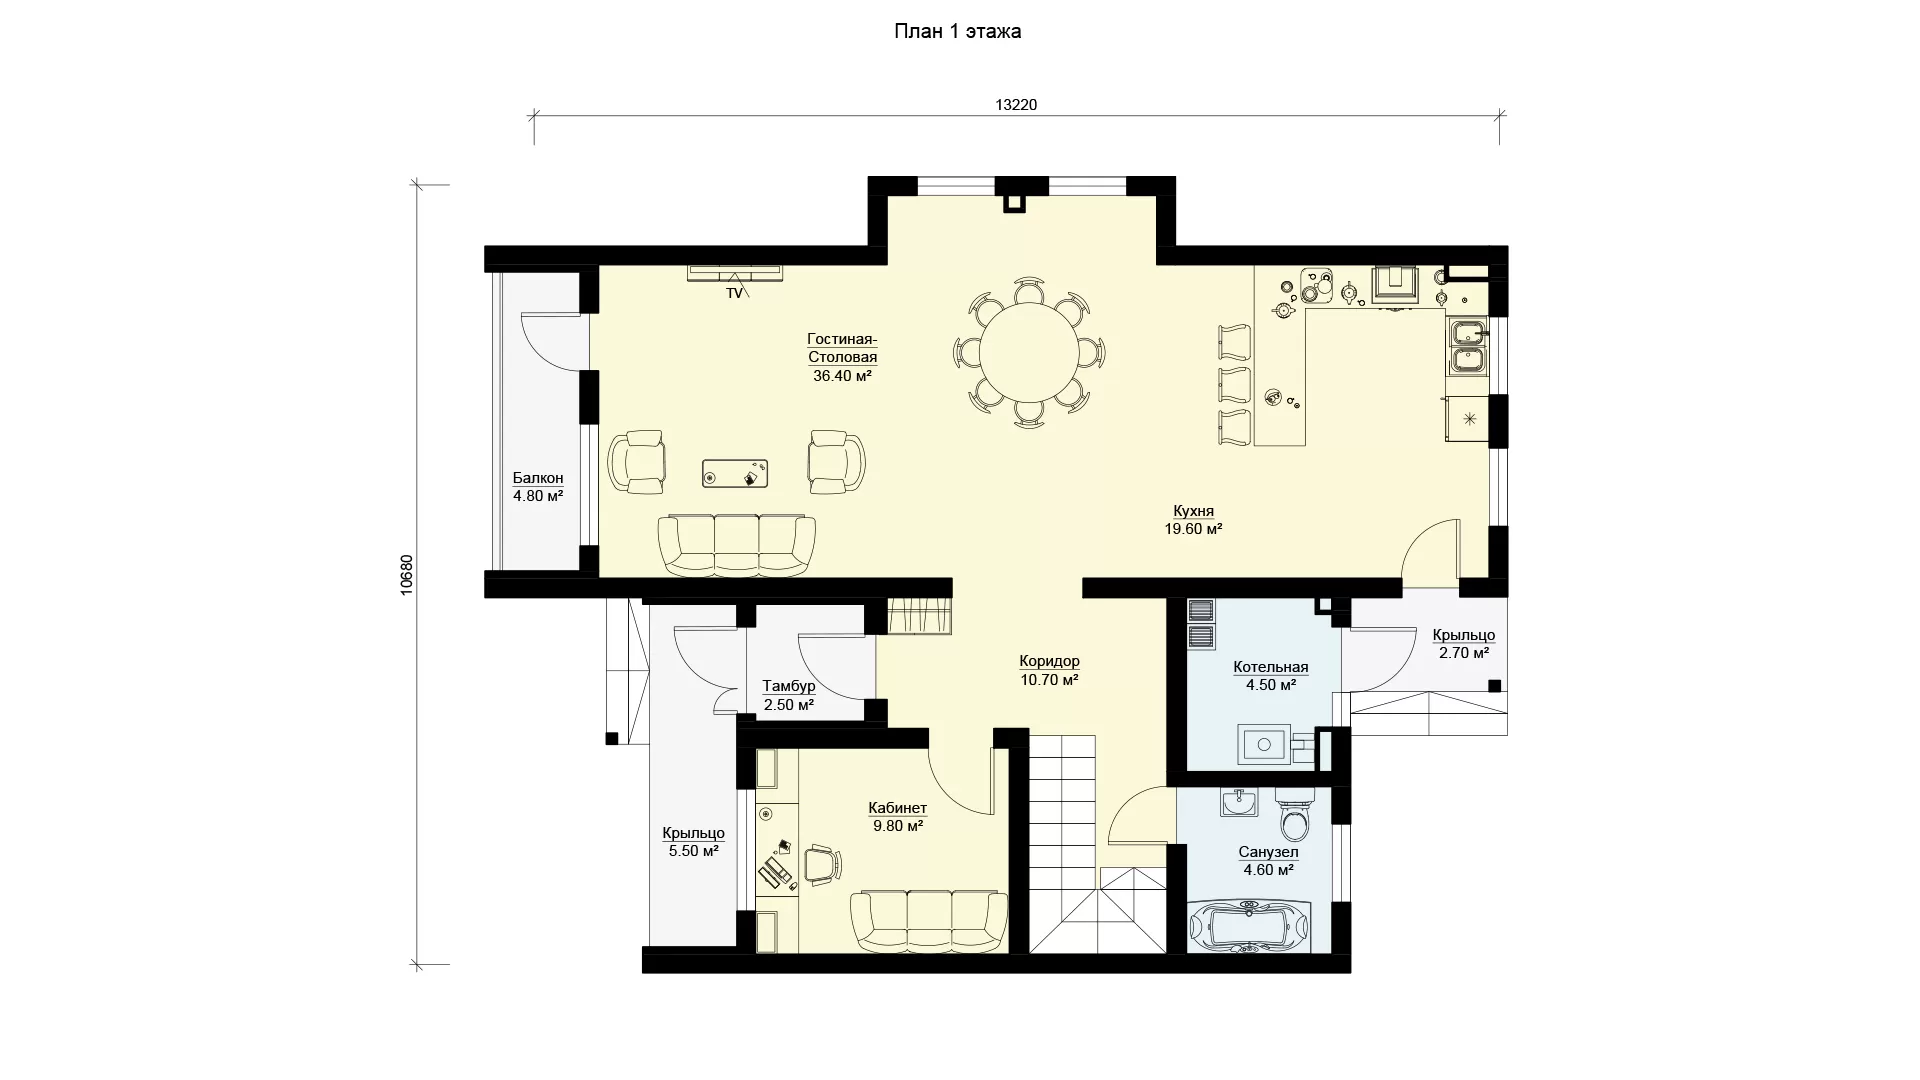 План первого этажа коттедж с 3 спальнями и плоской крышей, проект МС-198